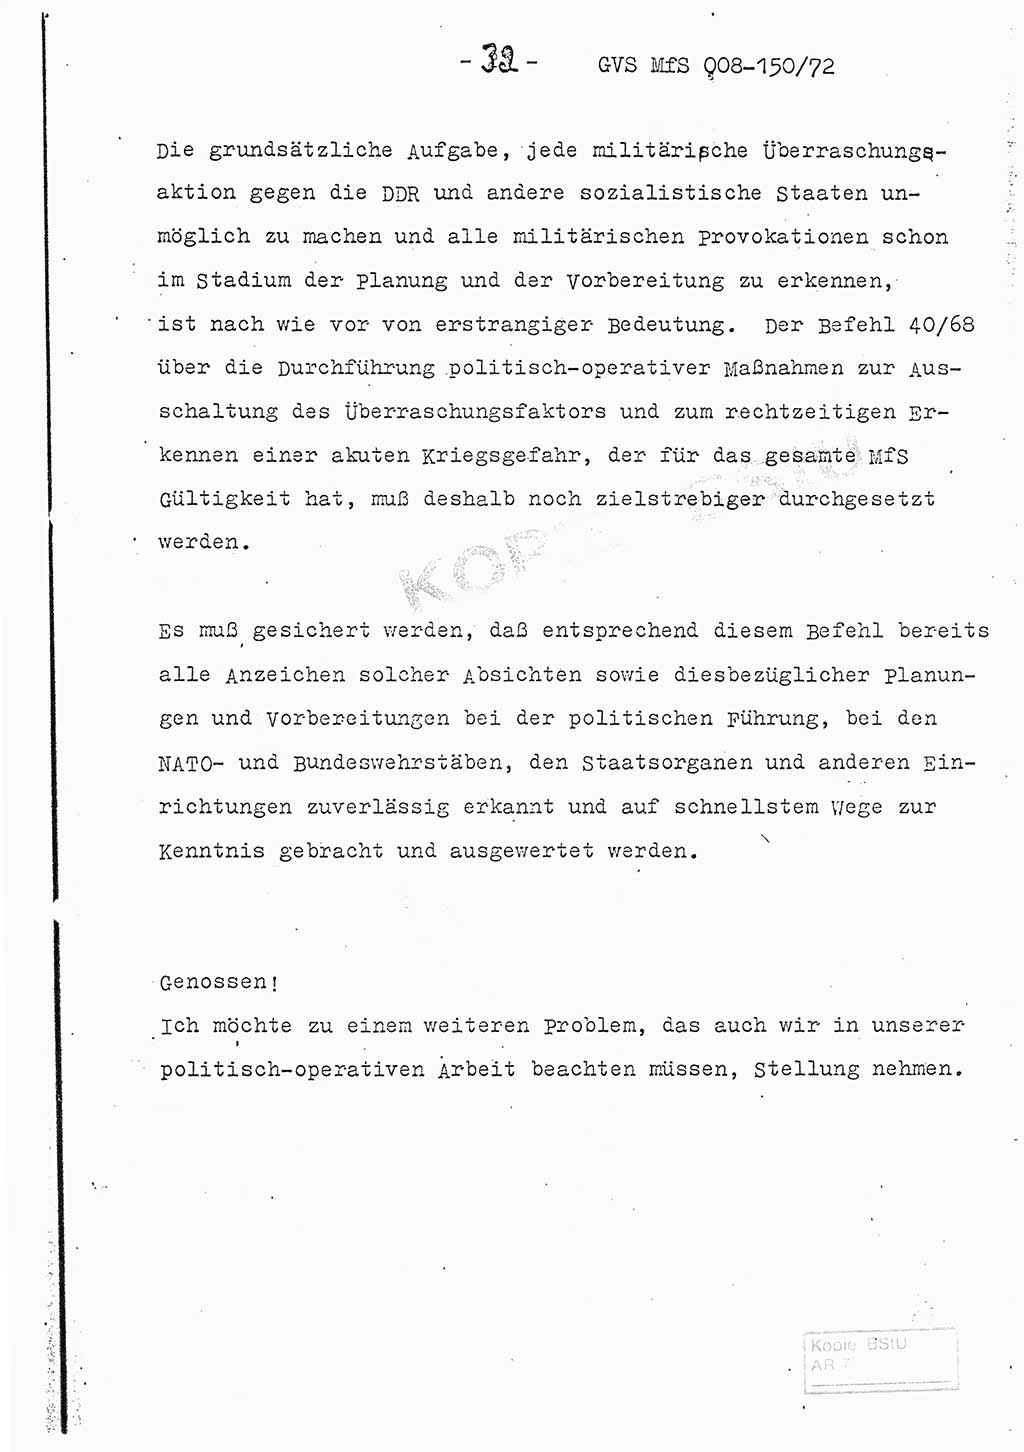 Referat (Entwurf) des Genossen Minister (Generaloberst Erich Mielke) auf der Dienstkonferenz 1972, Ministerium für Staatssicherheit (MfS) [Deutsche Demokratische Republik (DDR)], Der Minister, Geheime Verschlußsache (GVS) 008-150/72, Berlin 25.2.1972, Seite 32 (Ref. Entw. DK MfS DDR Min. GVS 008-150/72 1972, S. 32)